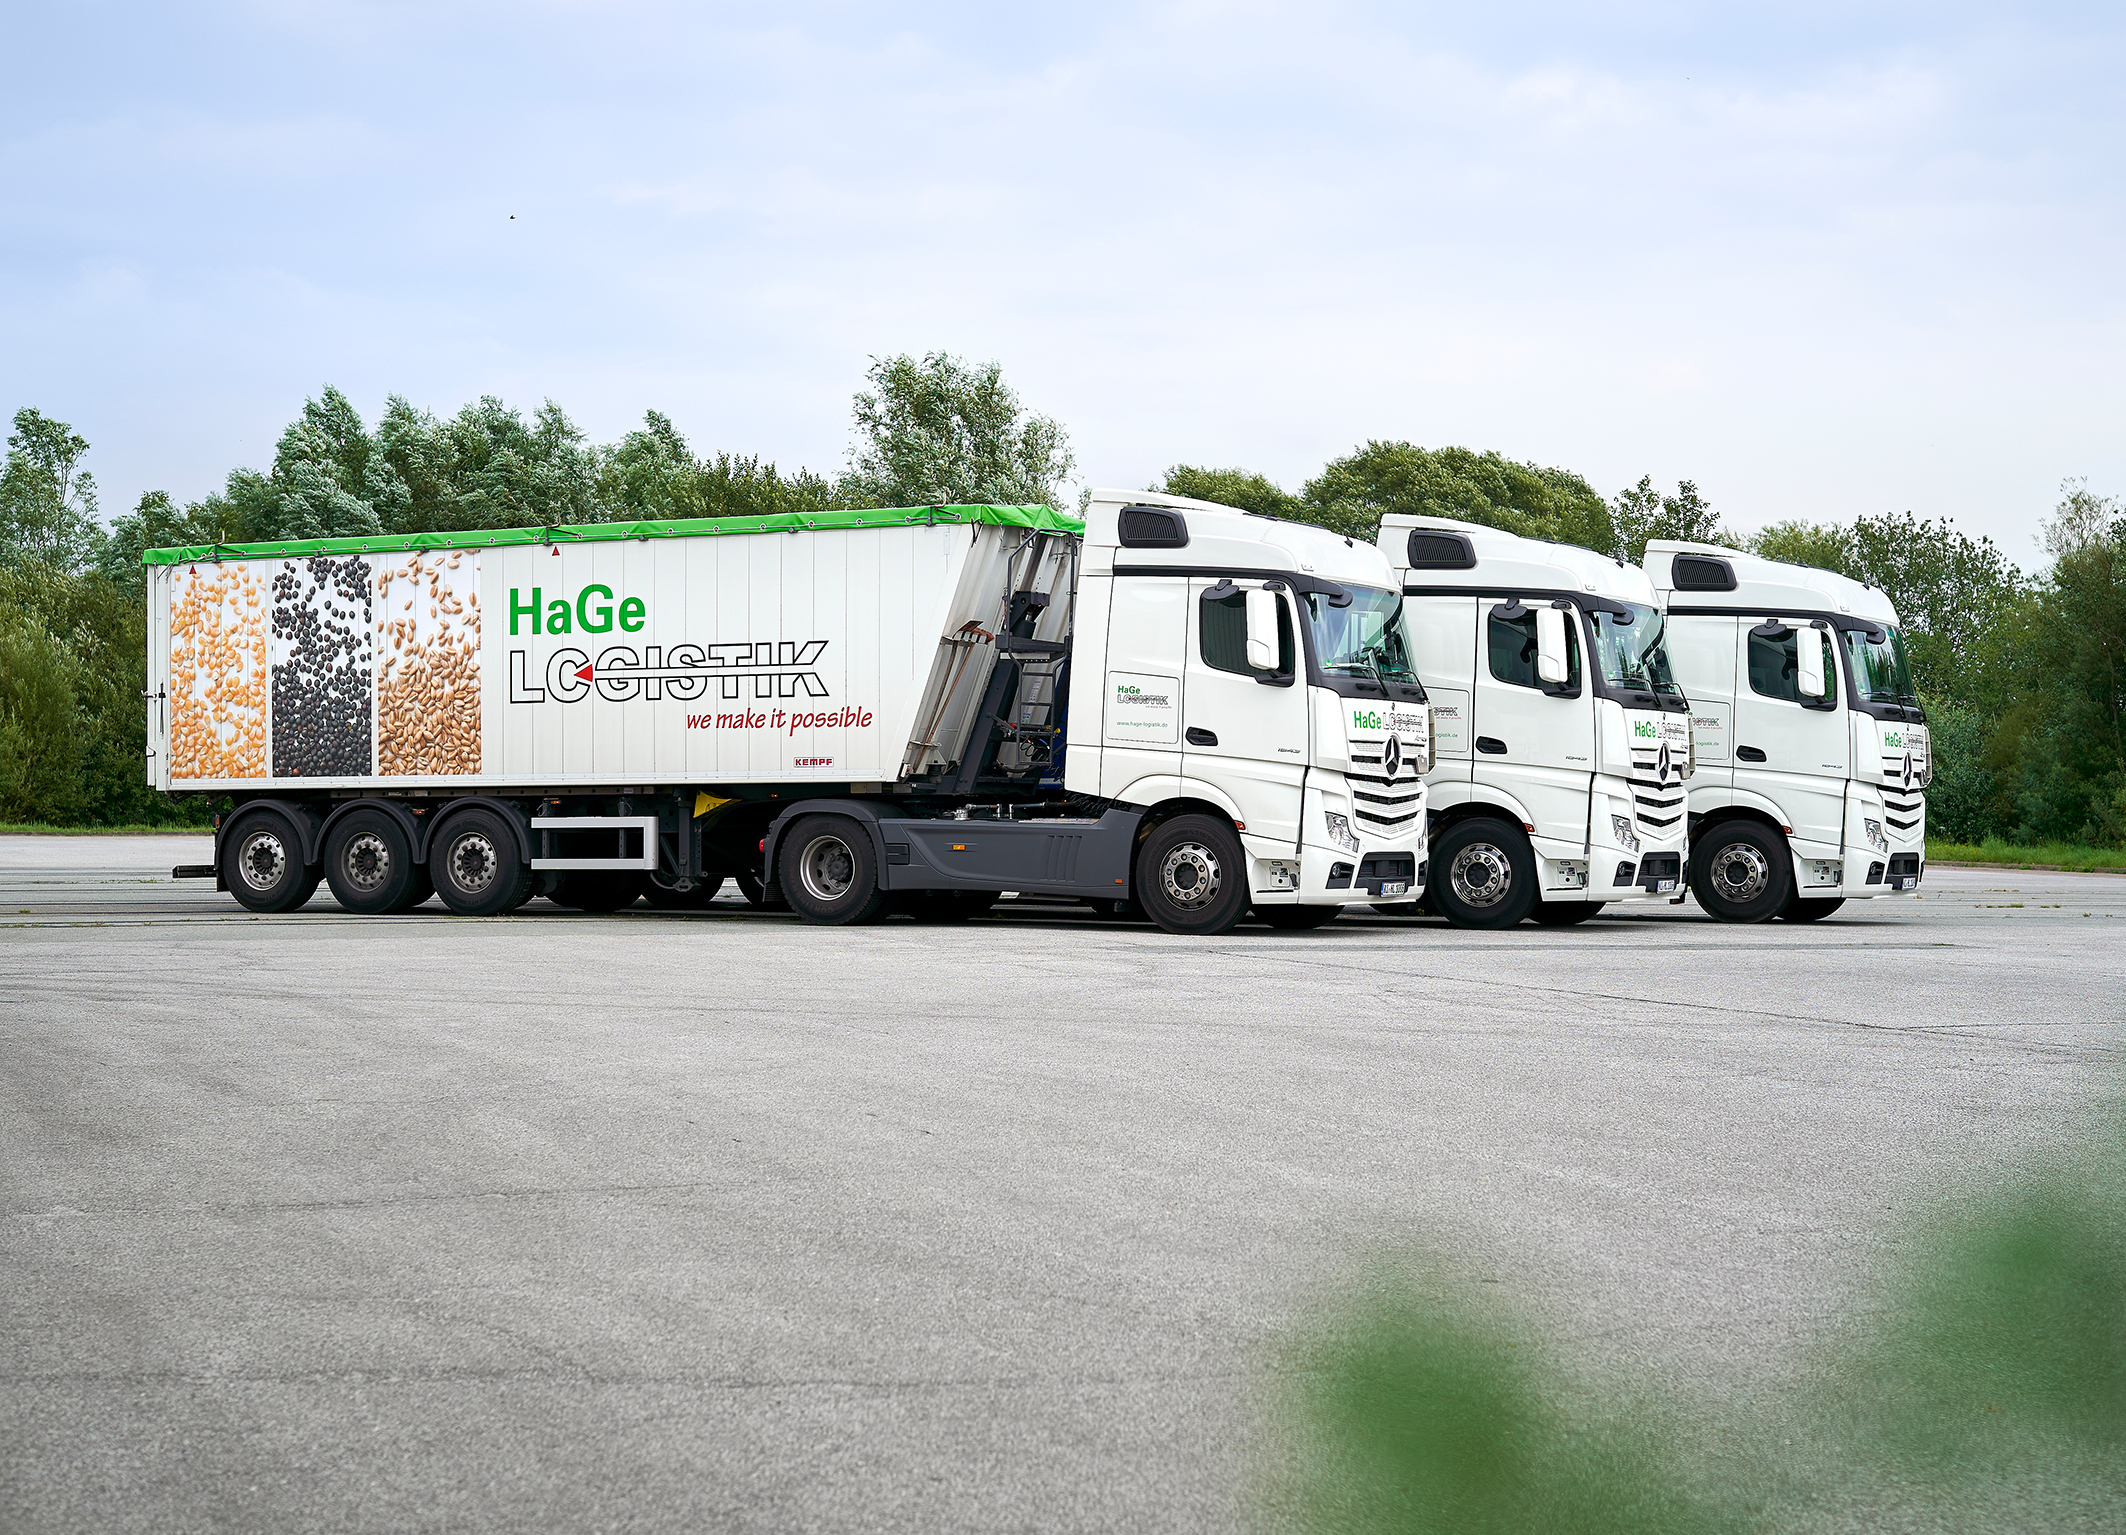 Beim Reifenmanagement setzt die HaGe Logistik GmbH auf den Conti360°-Servicevertrag mit runderneuerten Reifen.